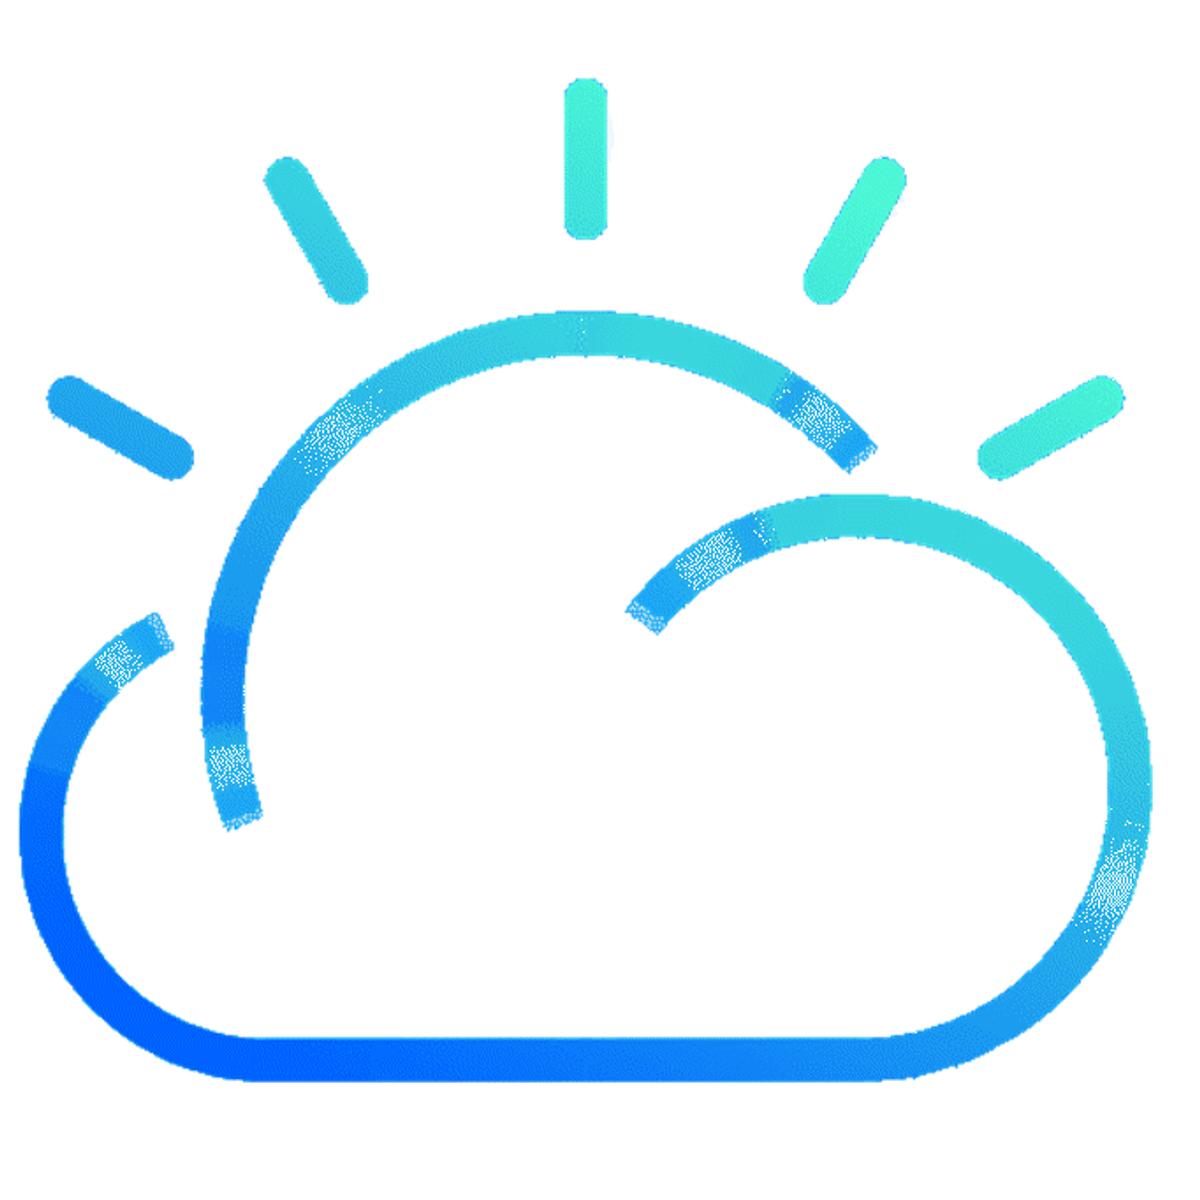 IBM Cloud Essentials